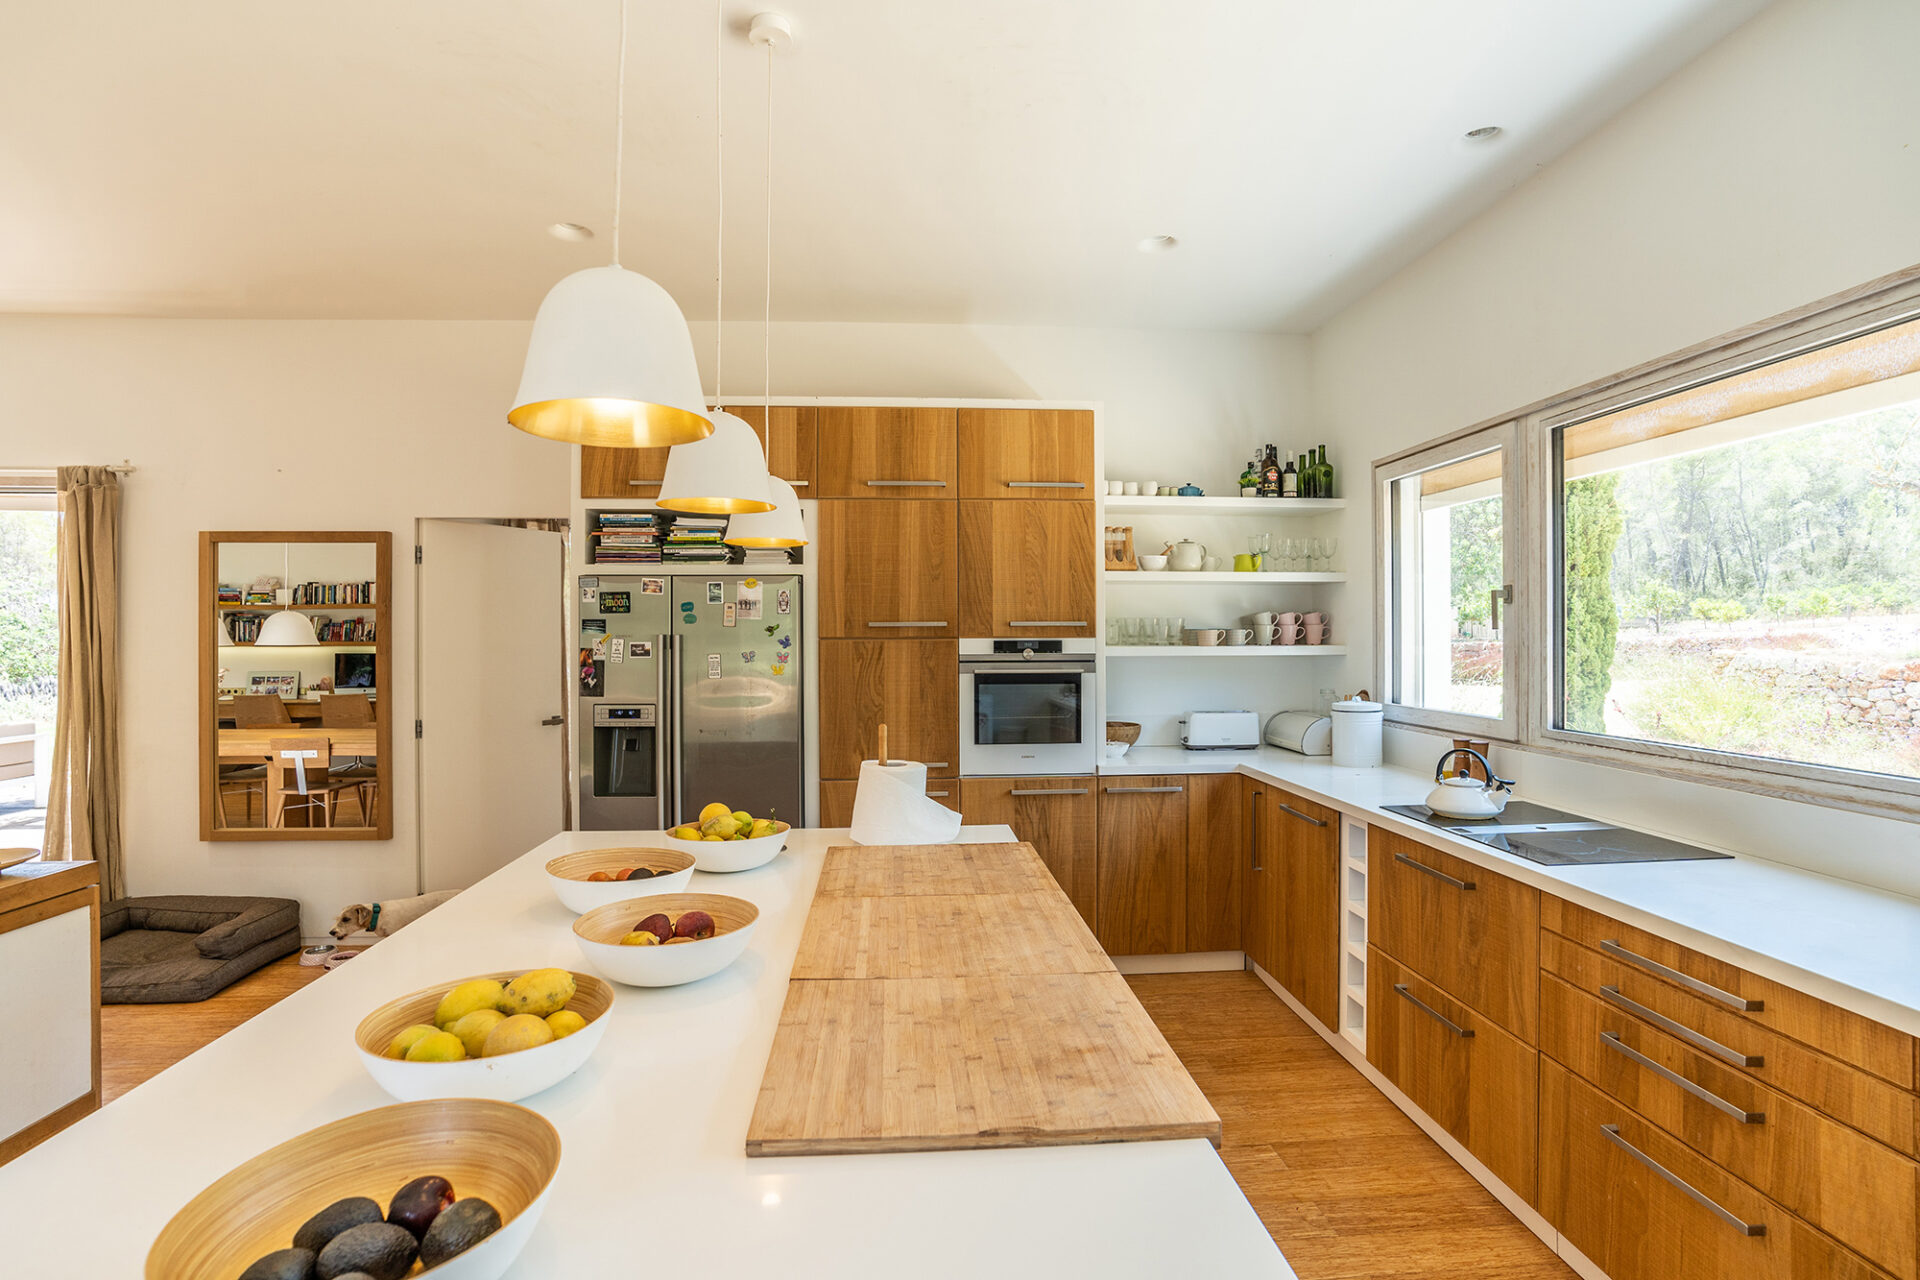 Terravita Ibiza Interior Design Architecture Can Tanca Kitchen